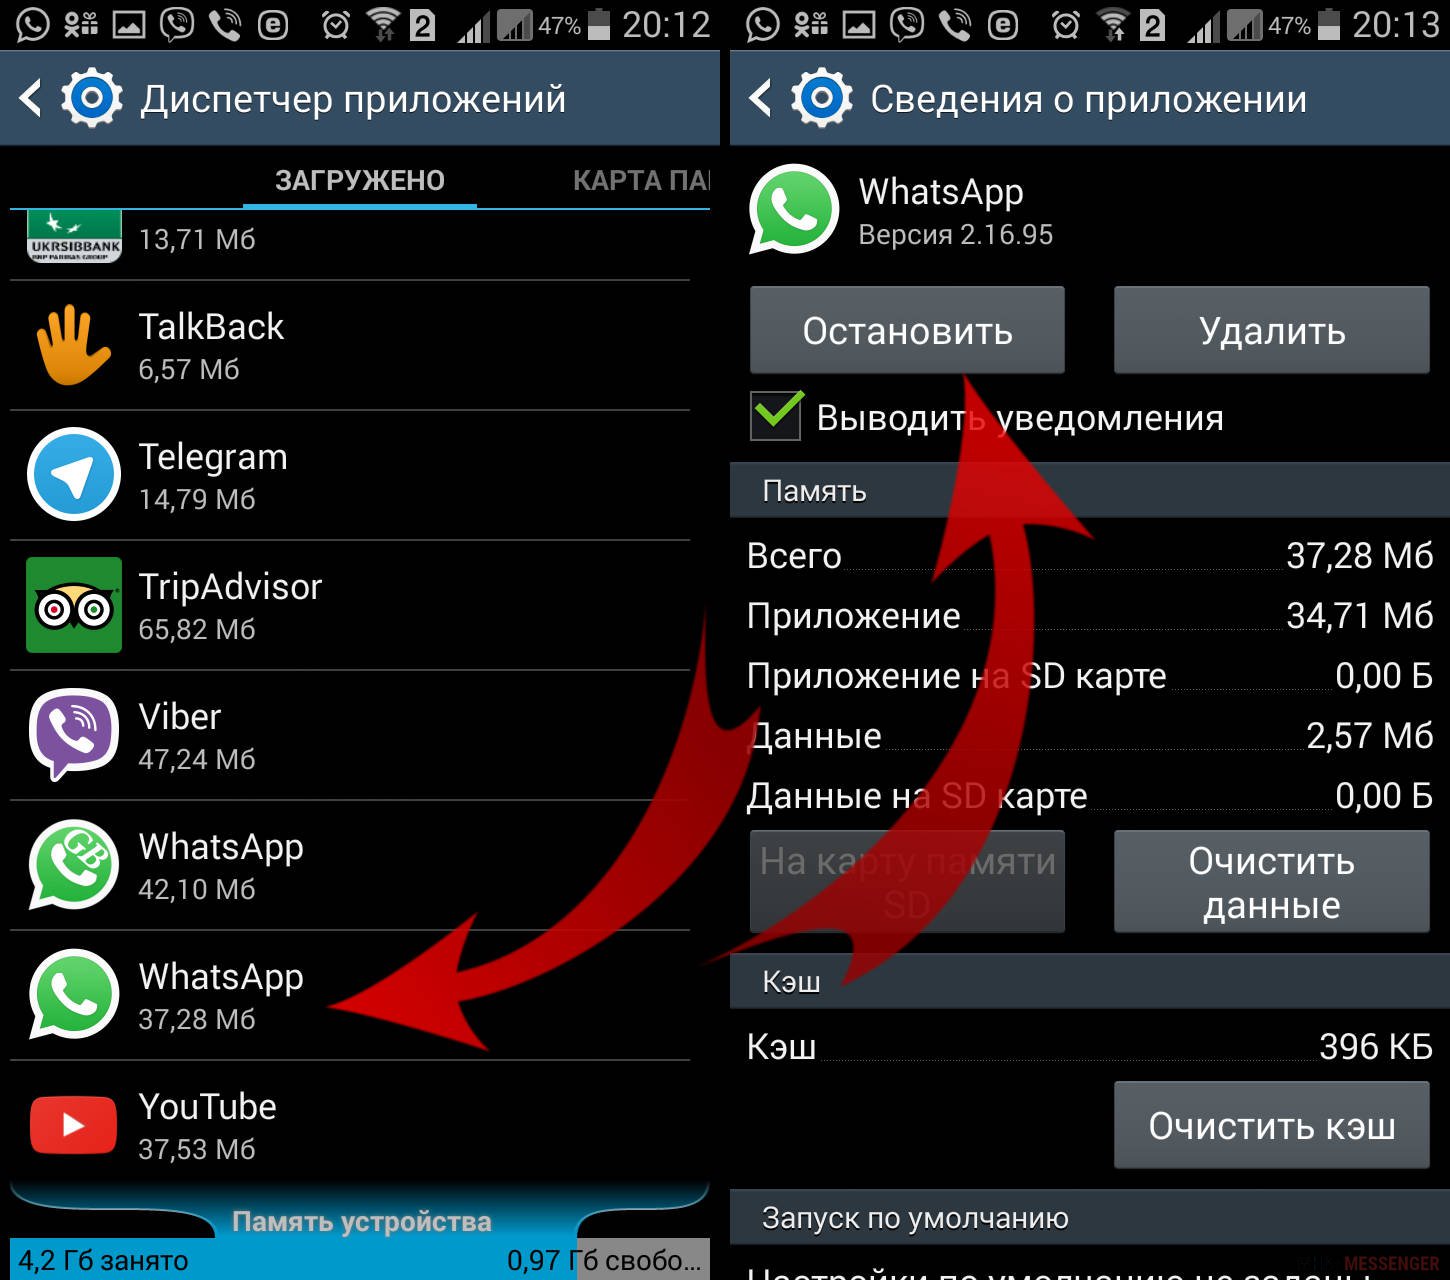 Обновить приложение телеграмм на андроиде самсунг как фото 61